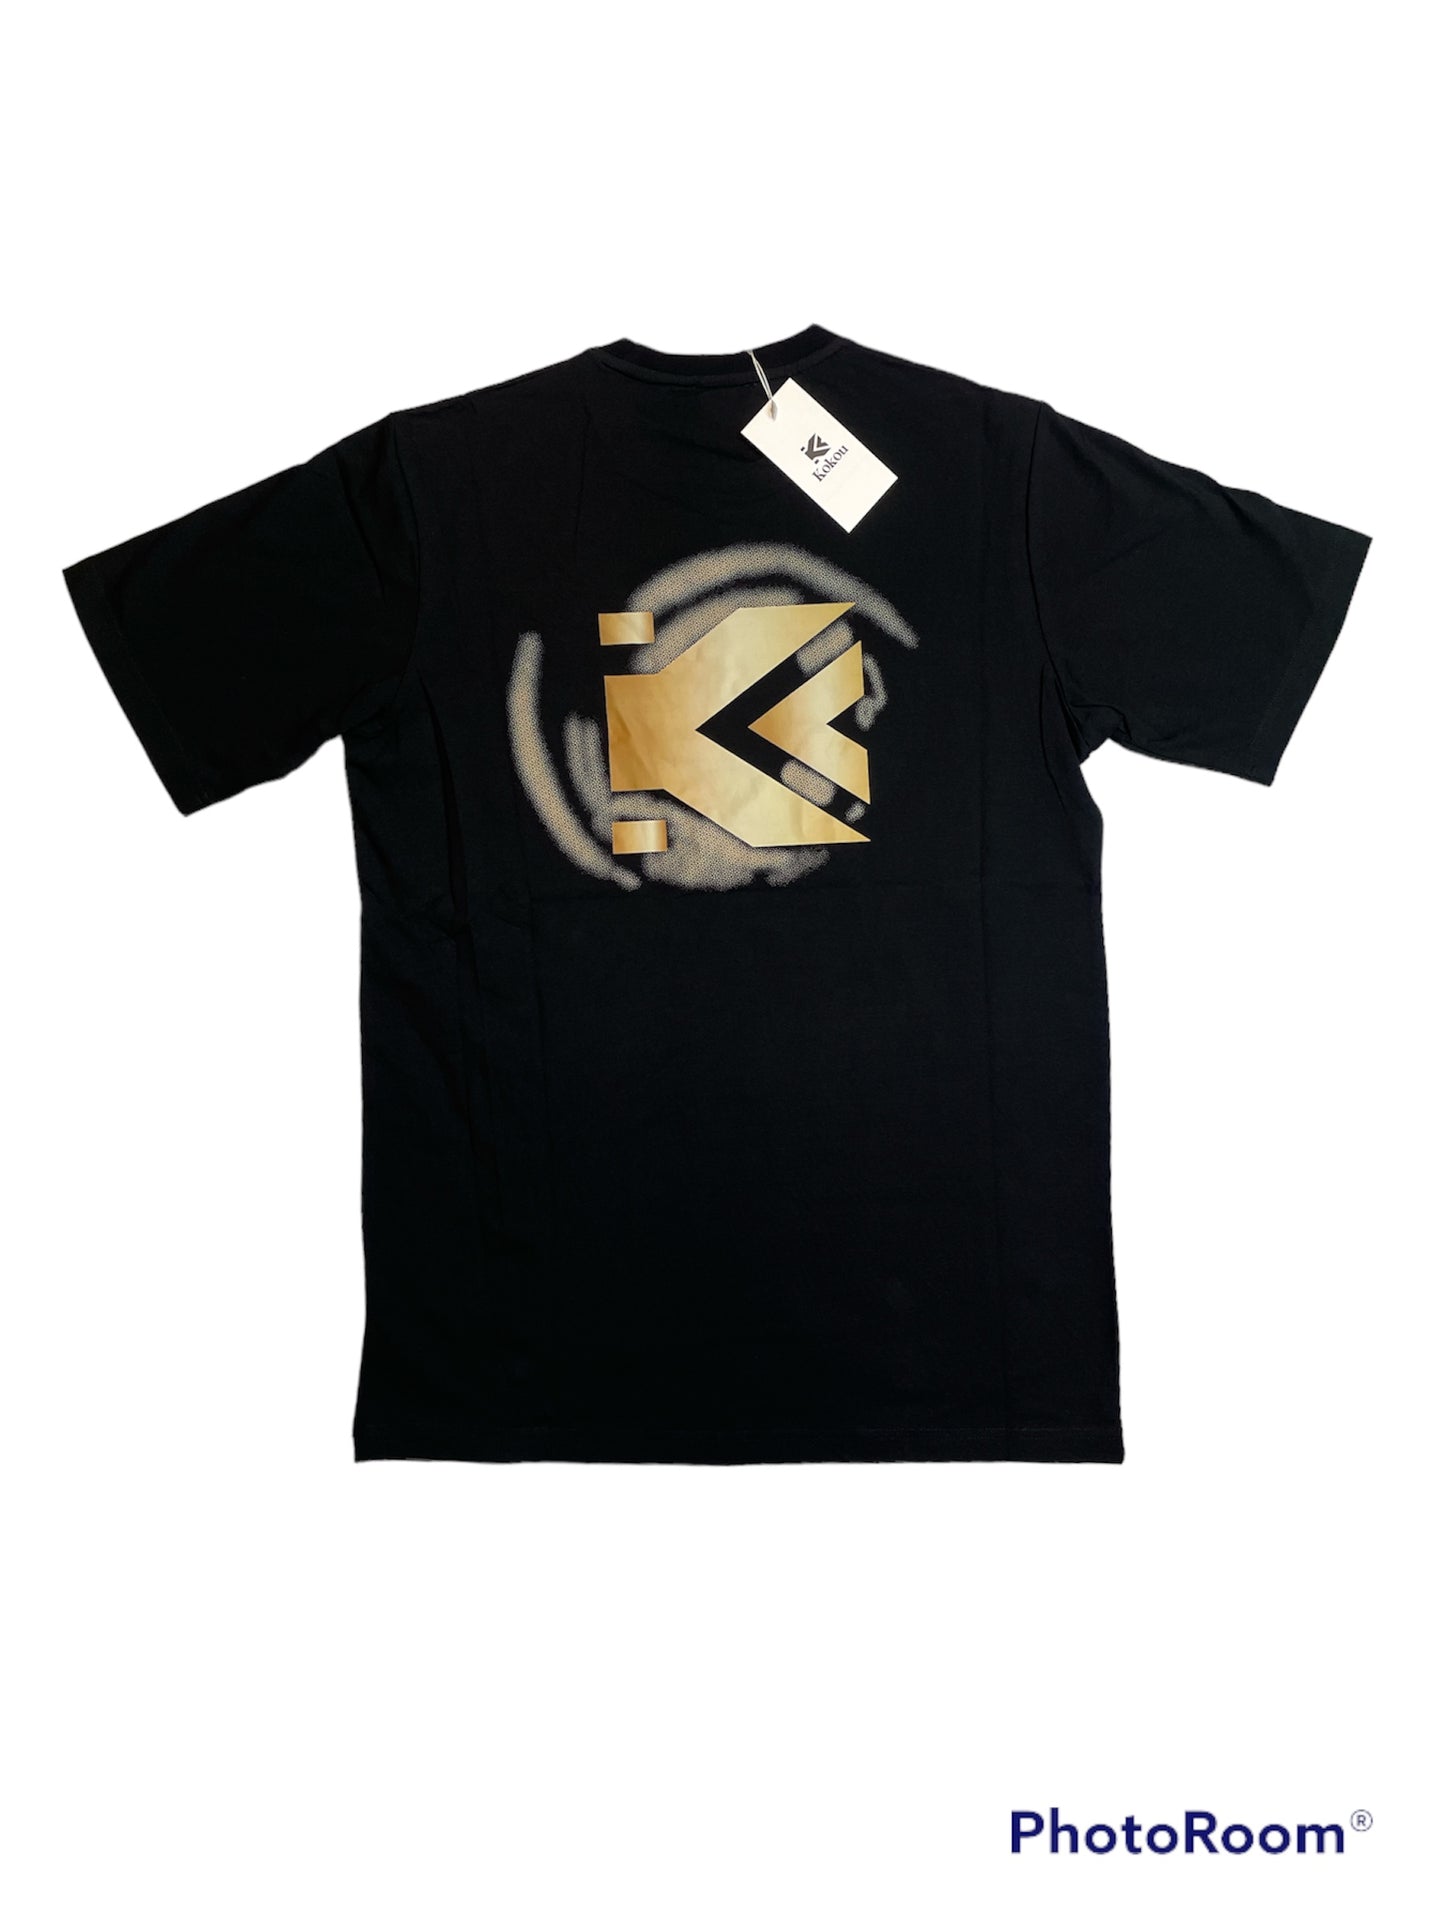 K logo T-Shirt (Original).